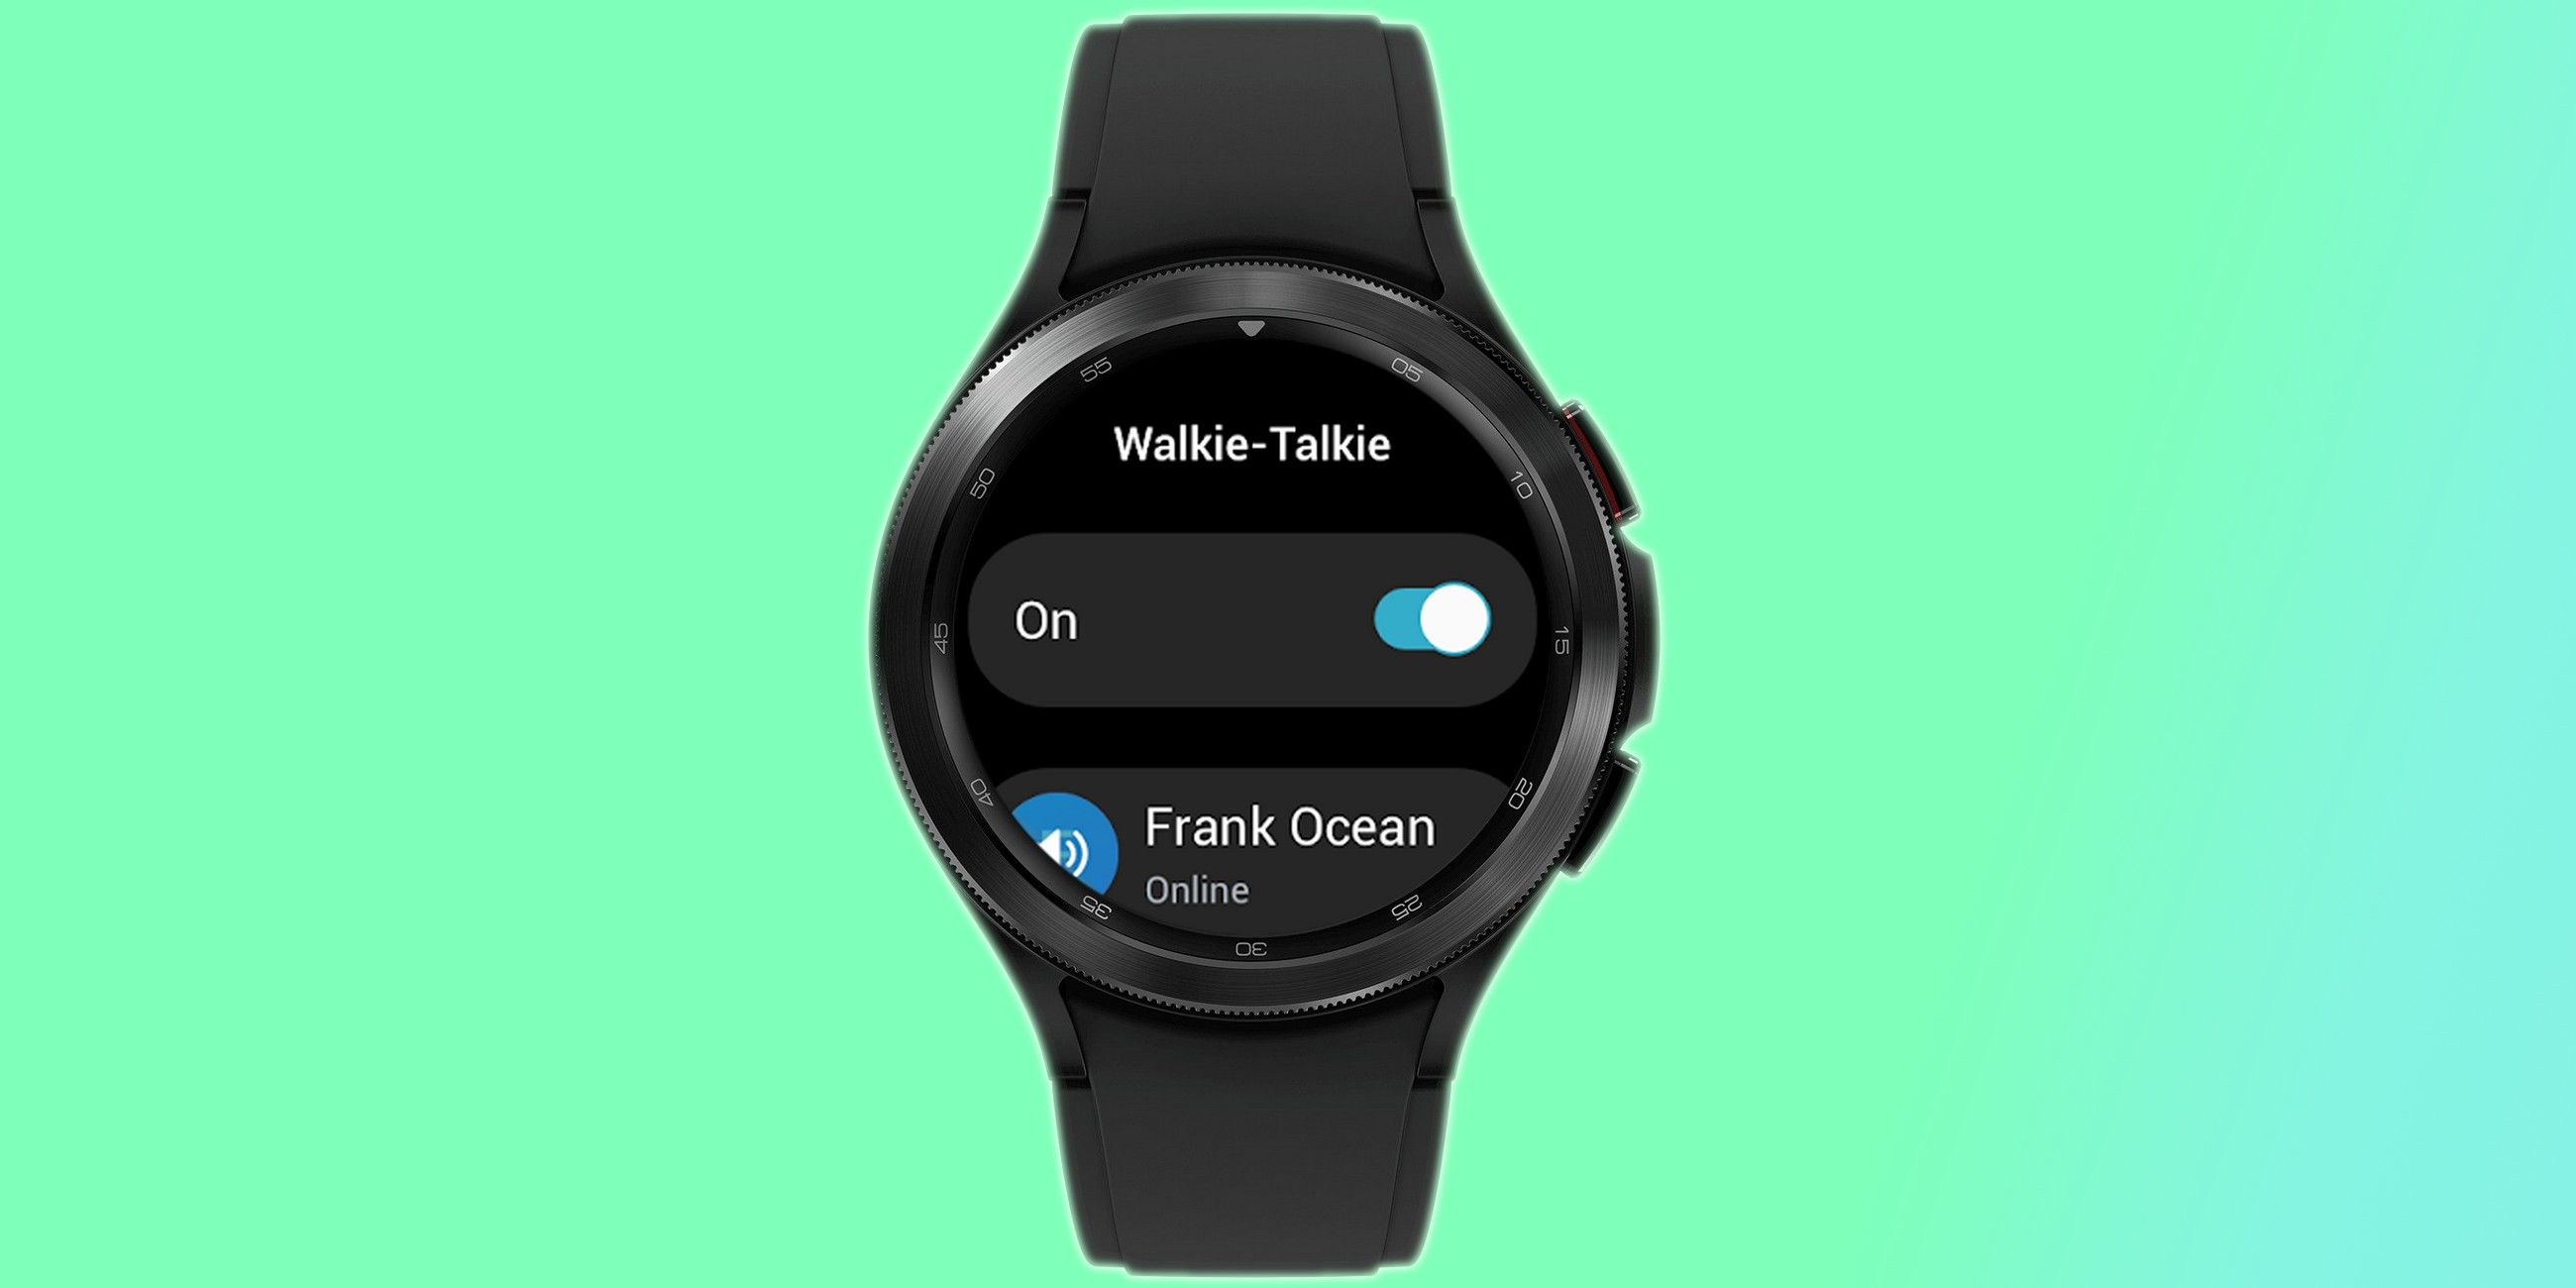 Samsung Galaxy Watch 4 walkie Talkie feature